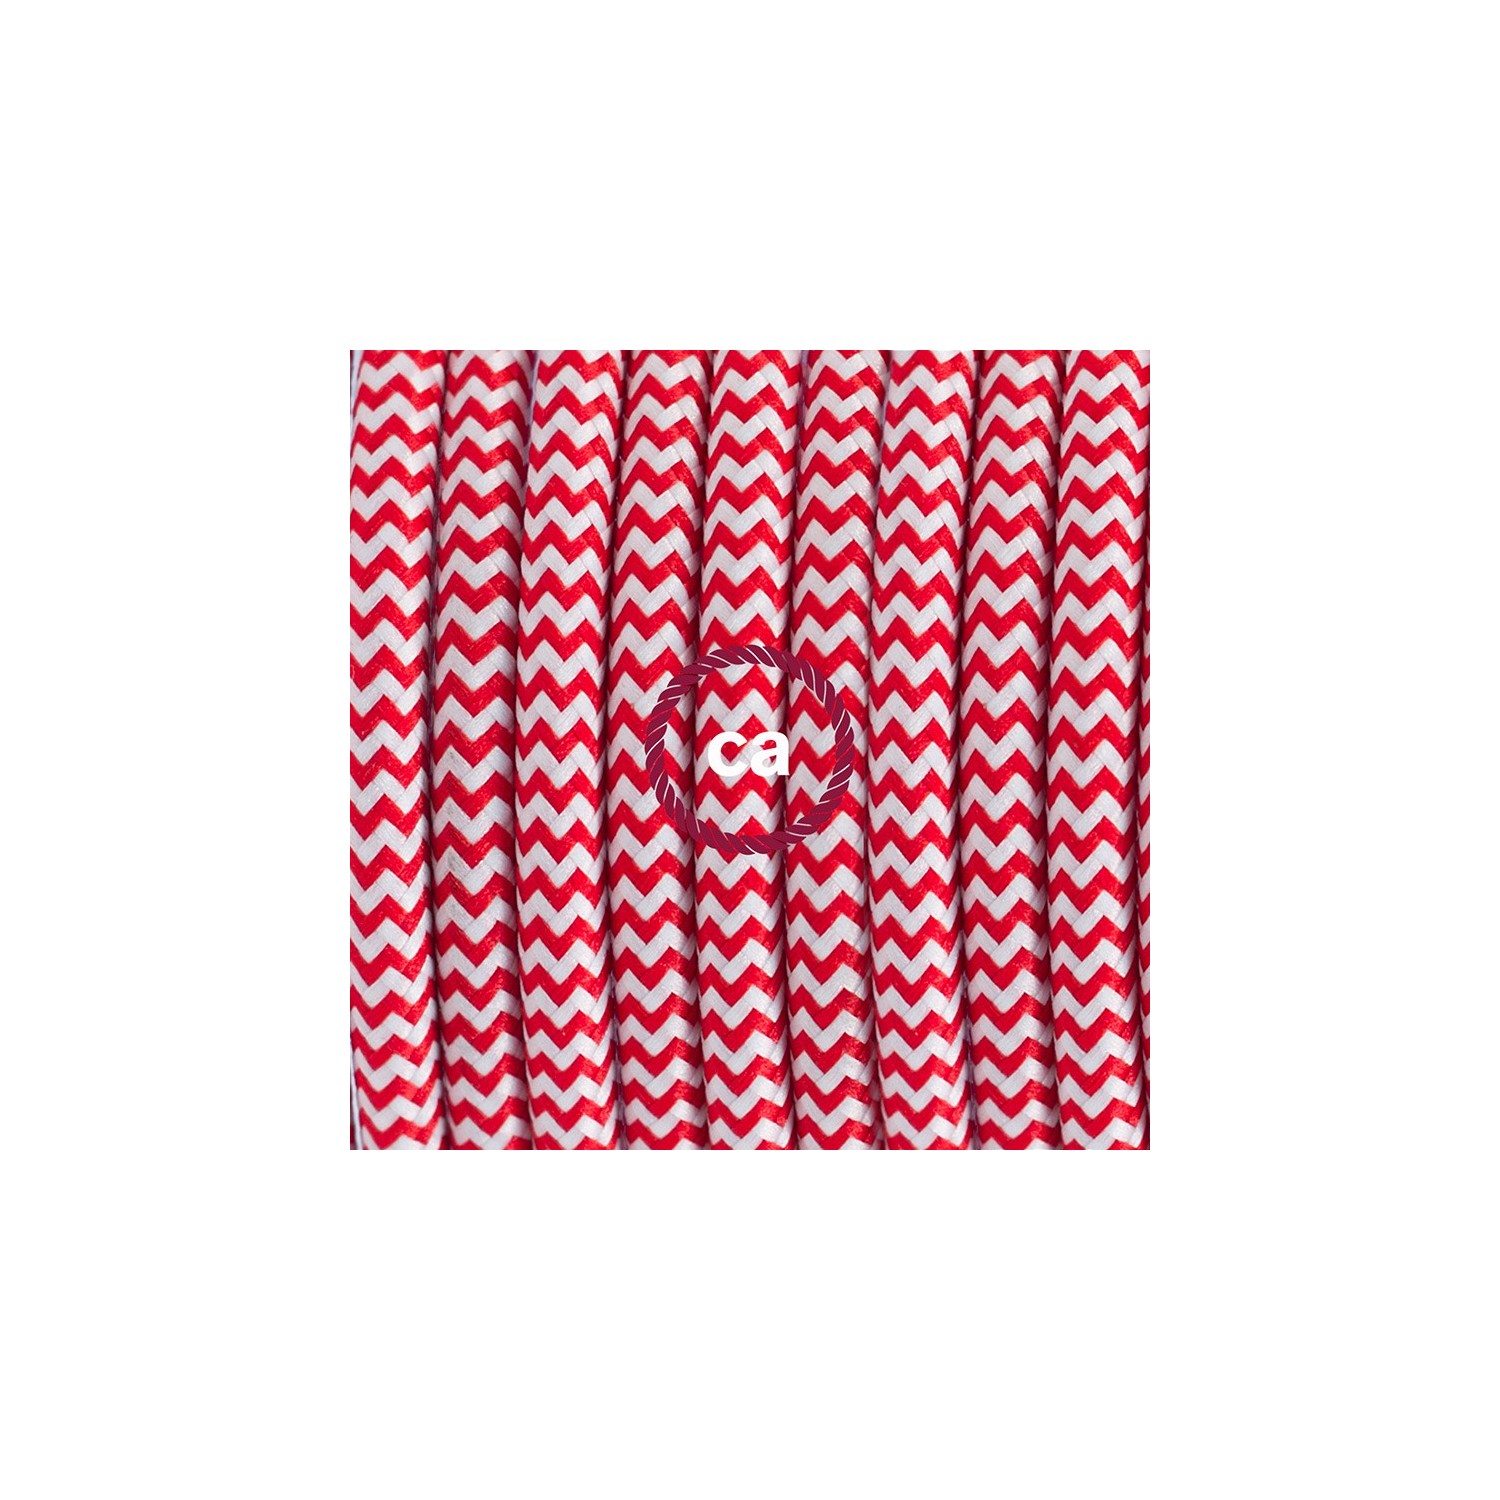 Zuleitung für Tischleuchten RZ09 Zick-Zack Weiß Rot Seideneffekt 1,80 m. Wählen Sie aus drei Farben bei Schalter und Stecke.